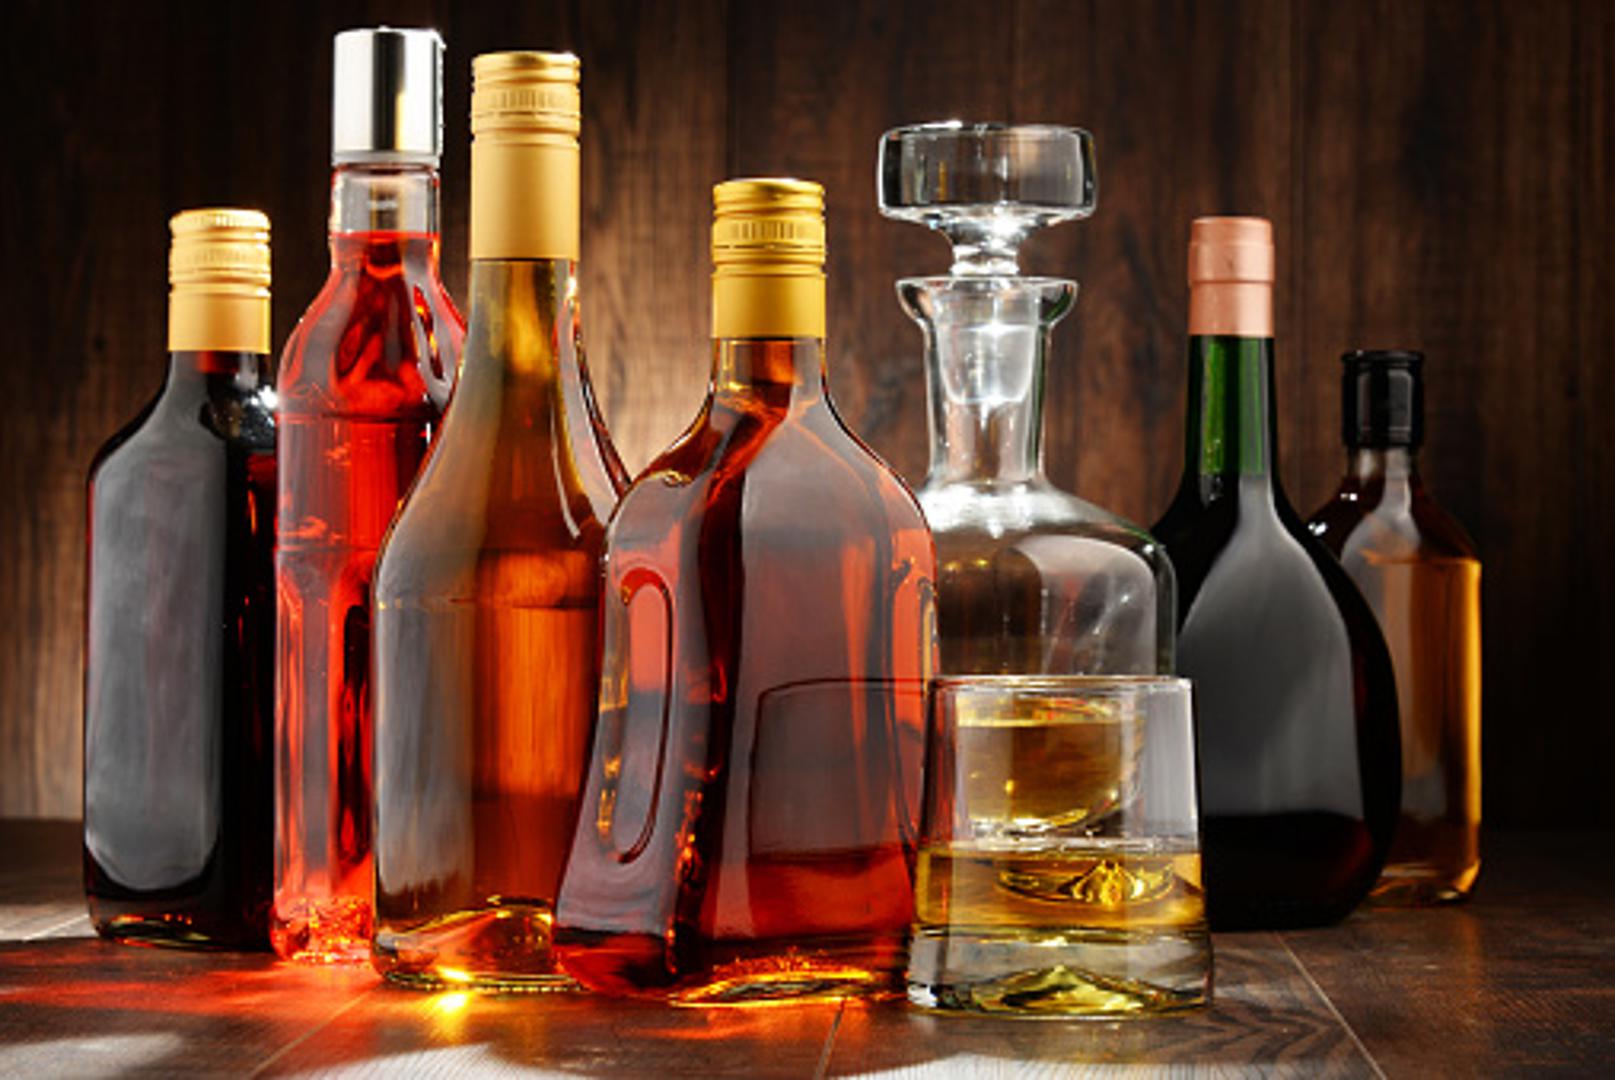 Alkoholna pića, ako su zatvorena, mogu izdržati dugo na suhom i tamnom mjestu. Otvorene boce alkohola će se ipak ponašati malo drugačije. Nakon određenog vremena će izgubiti okus, ali i strukturu. 